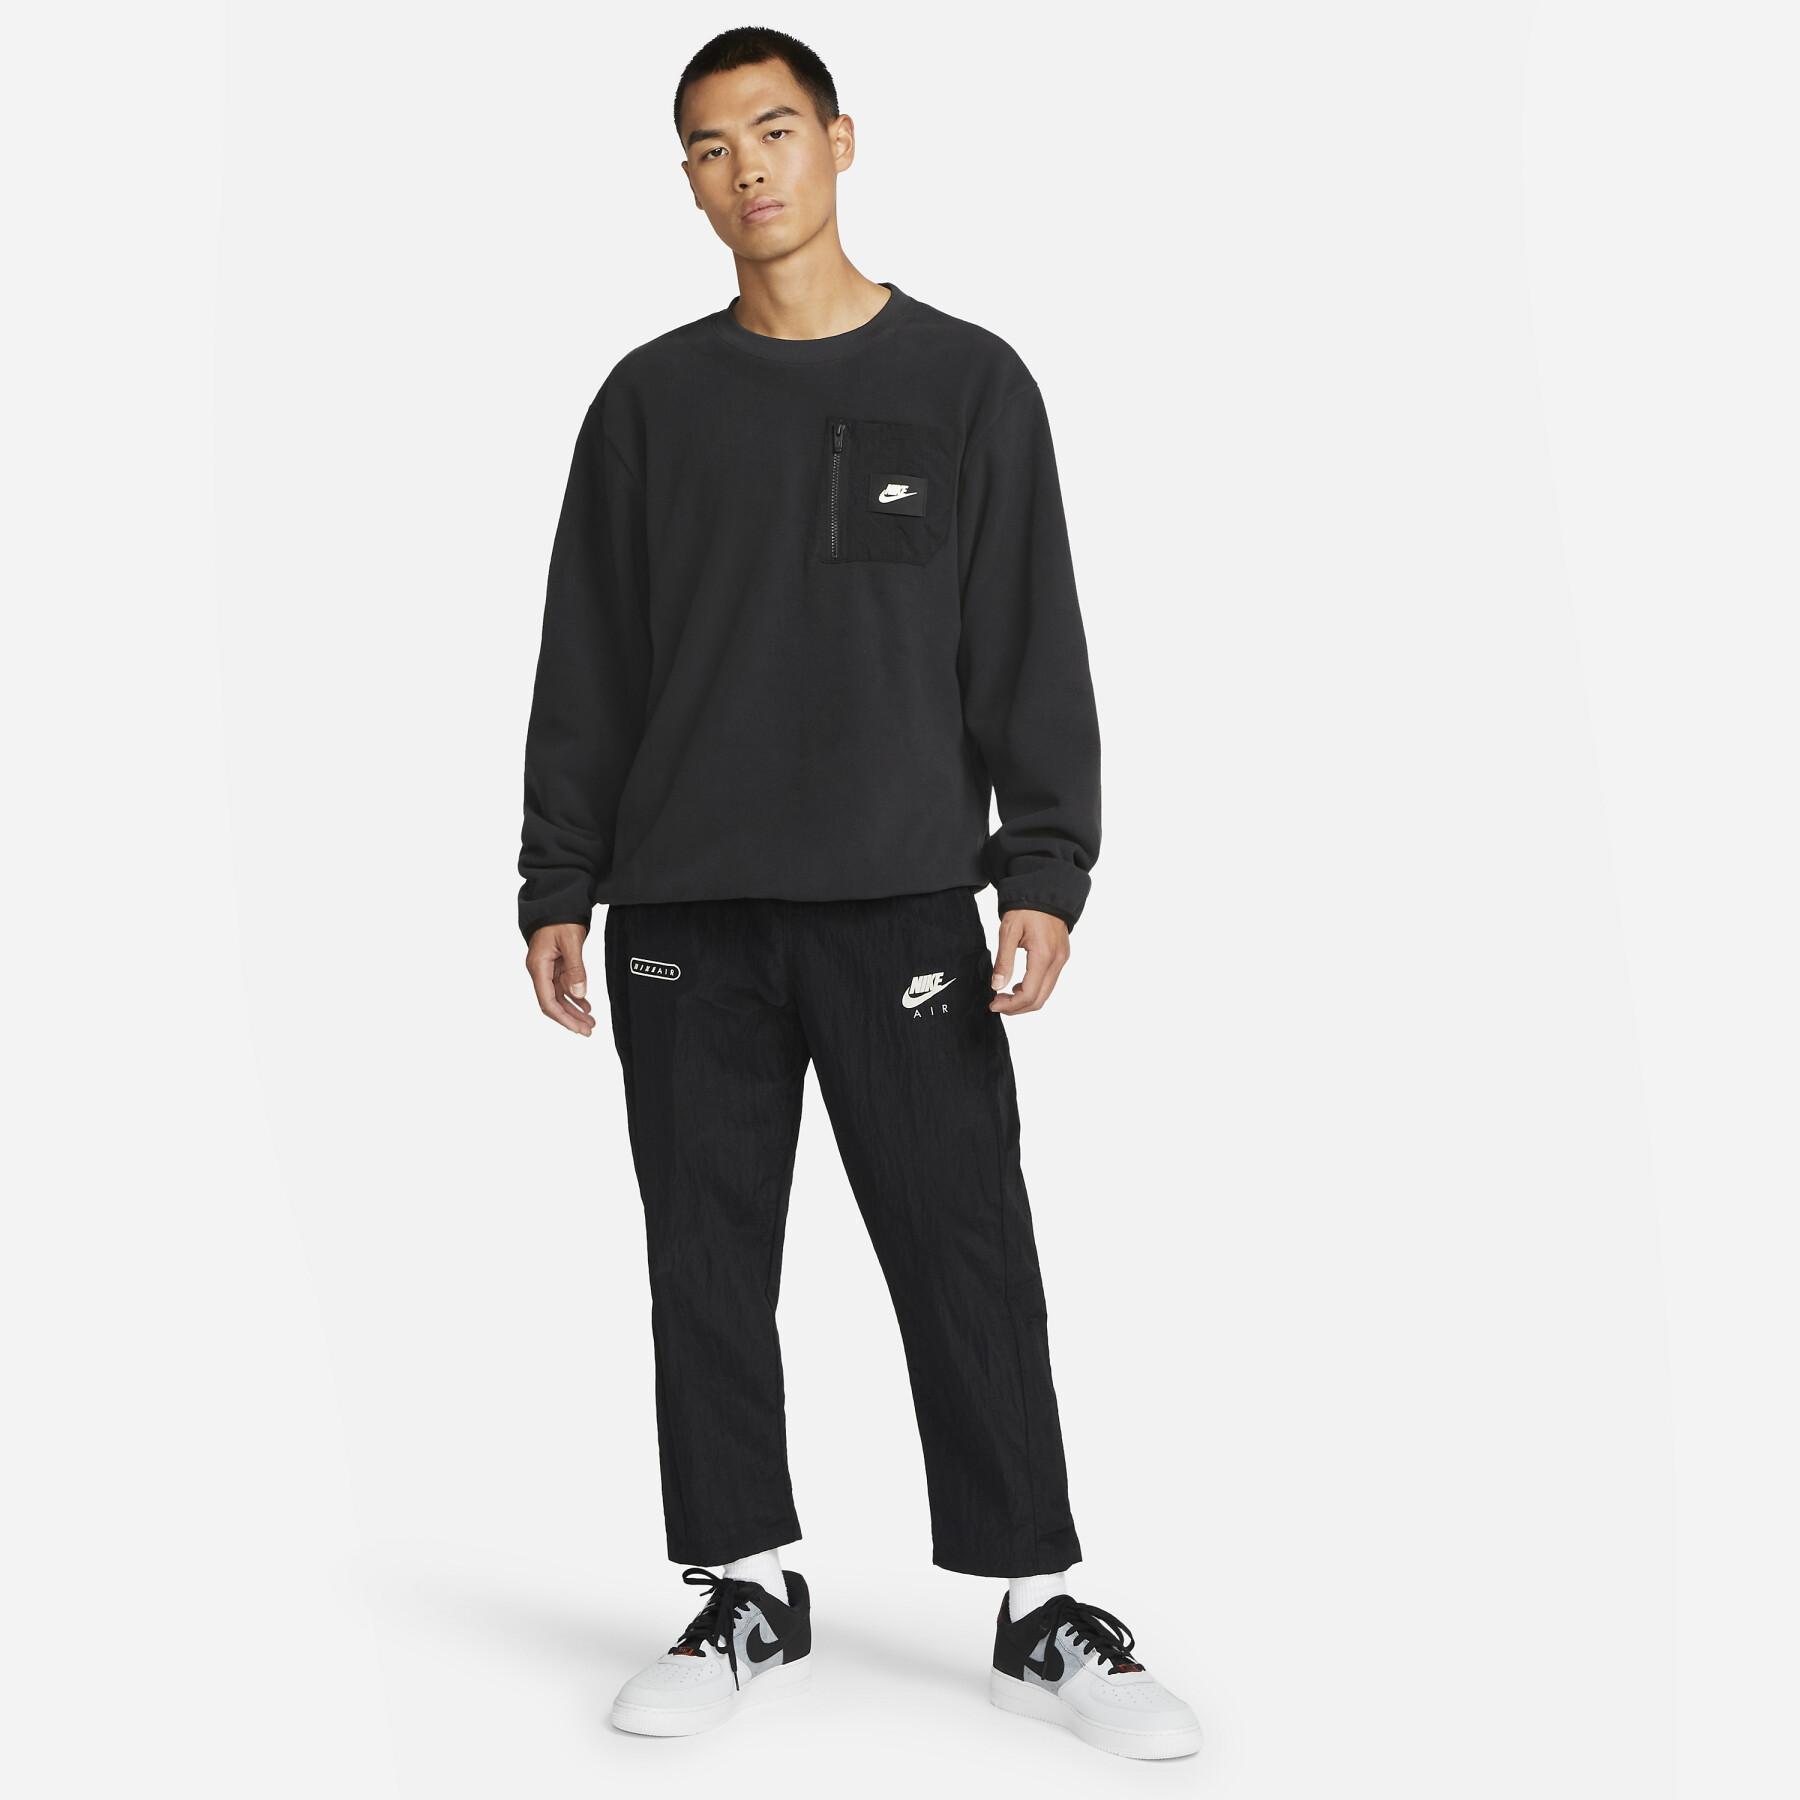 Sweatshirt Nike Polar Fleece